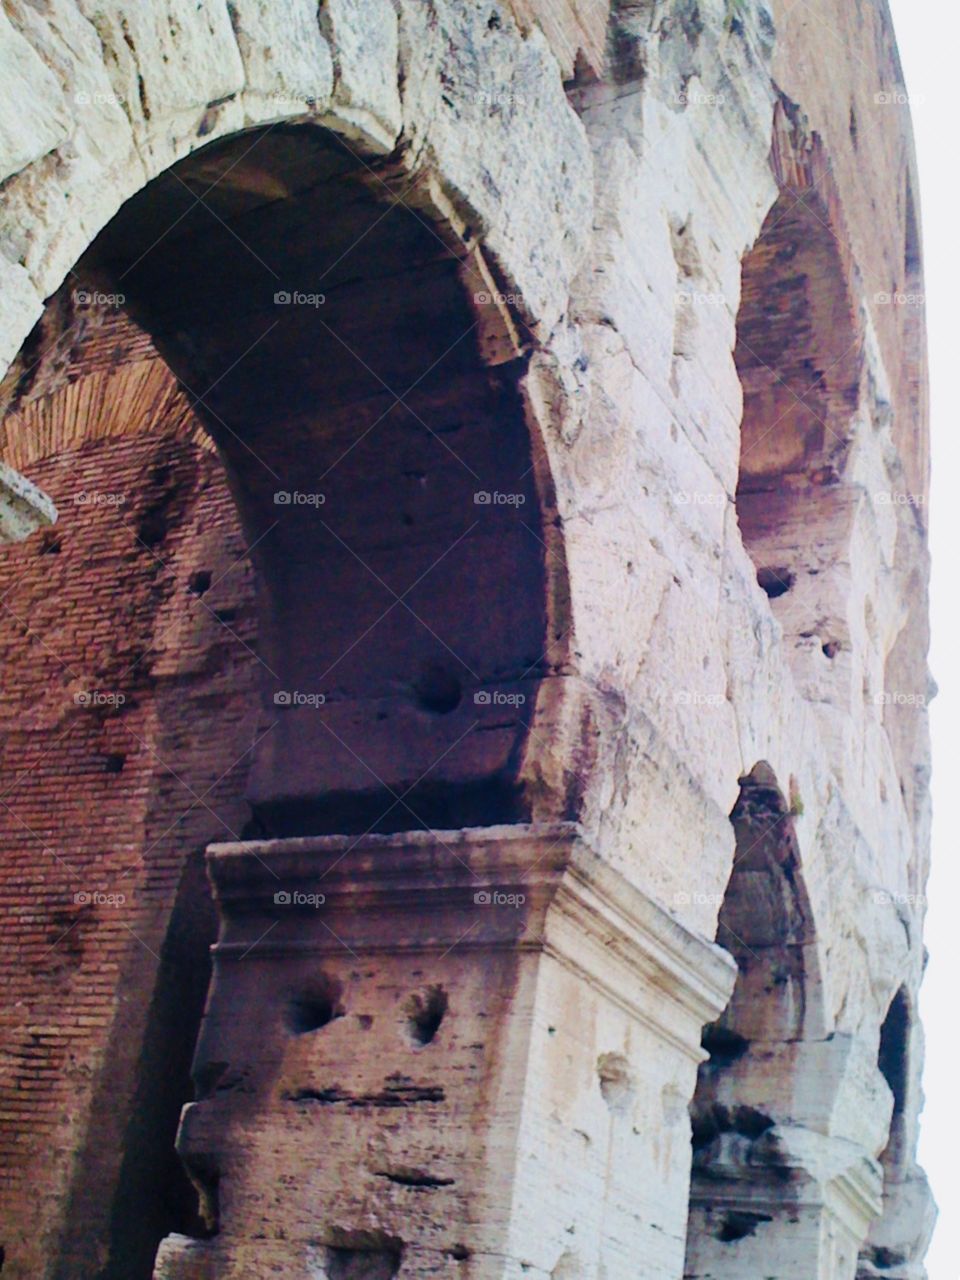 Colosseum 